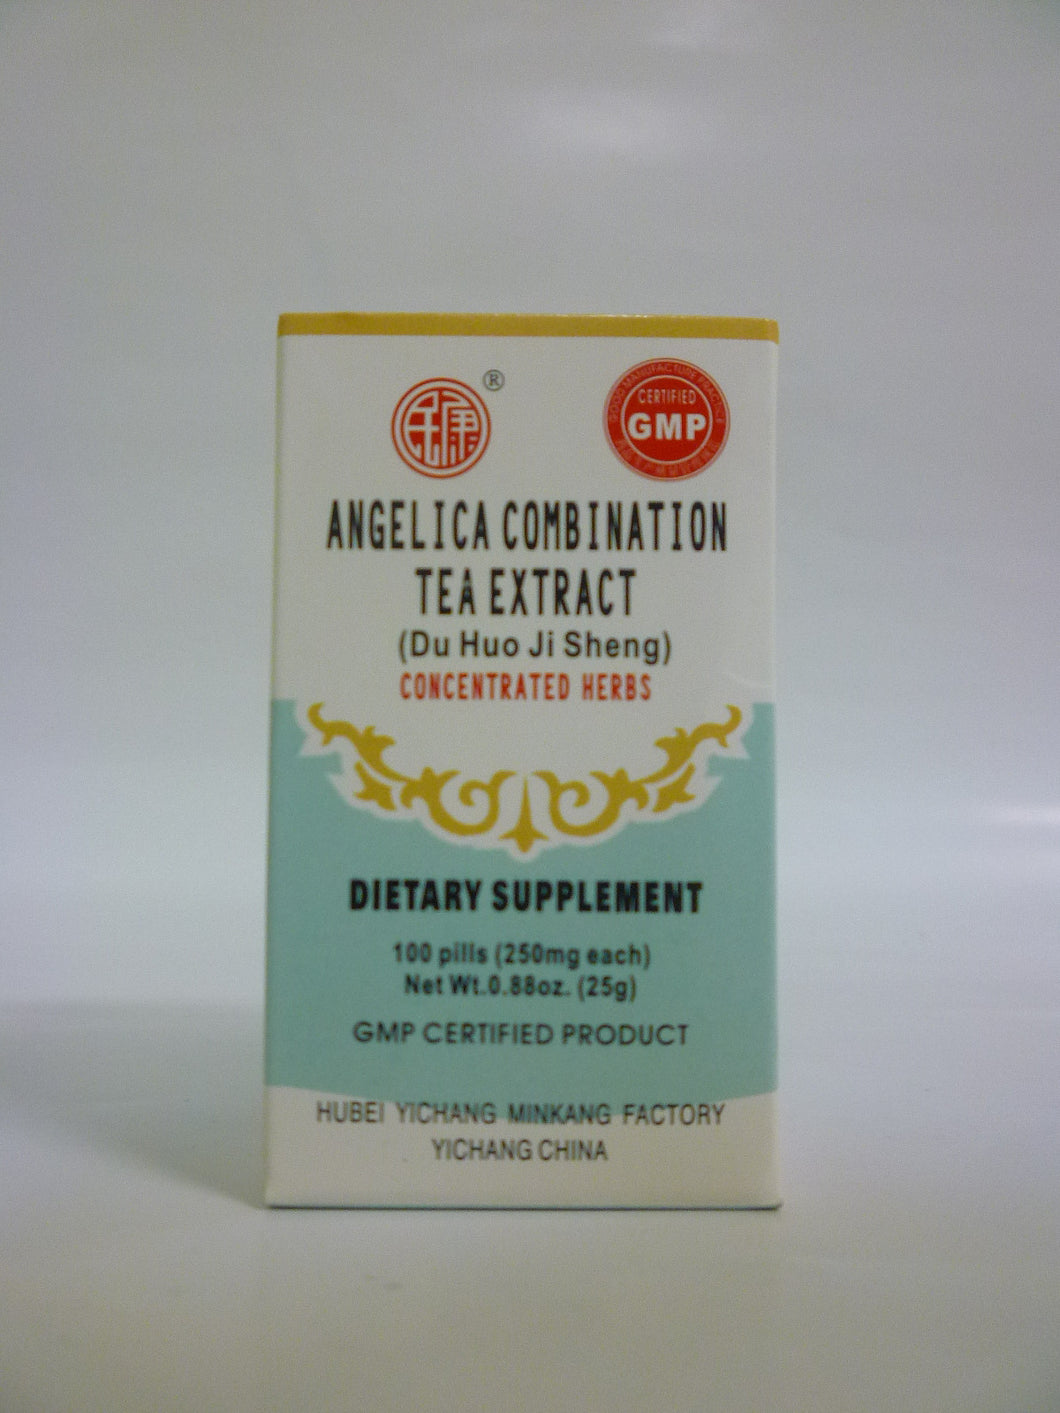 Angelica Combination Tea Extract (Du Huo Ji Sheng Wan)